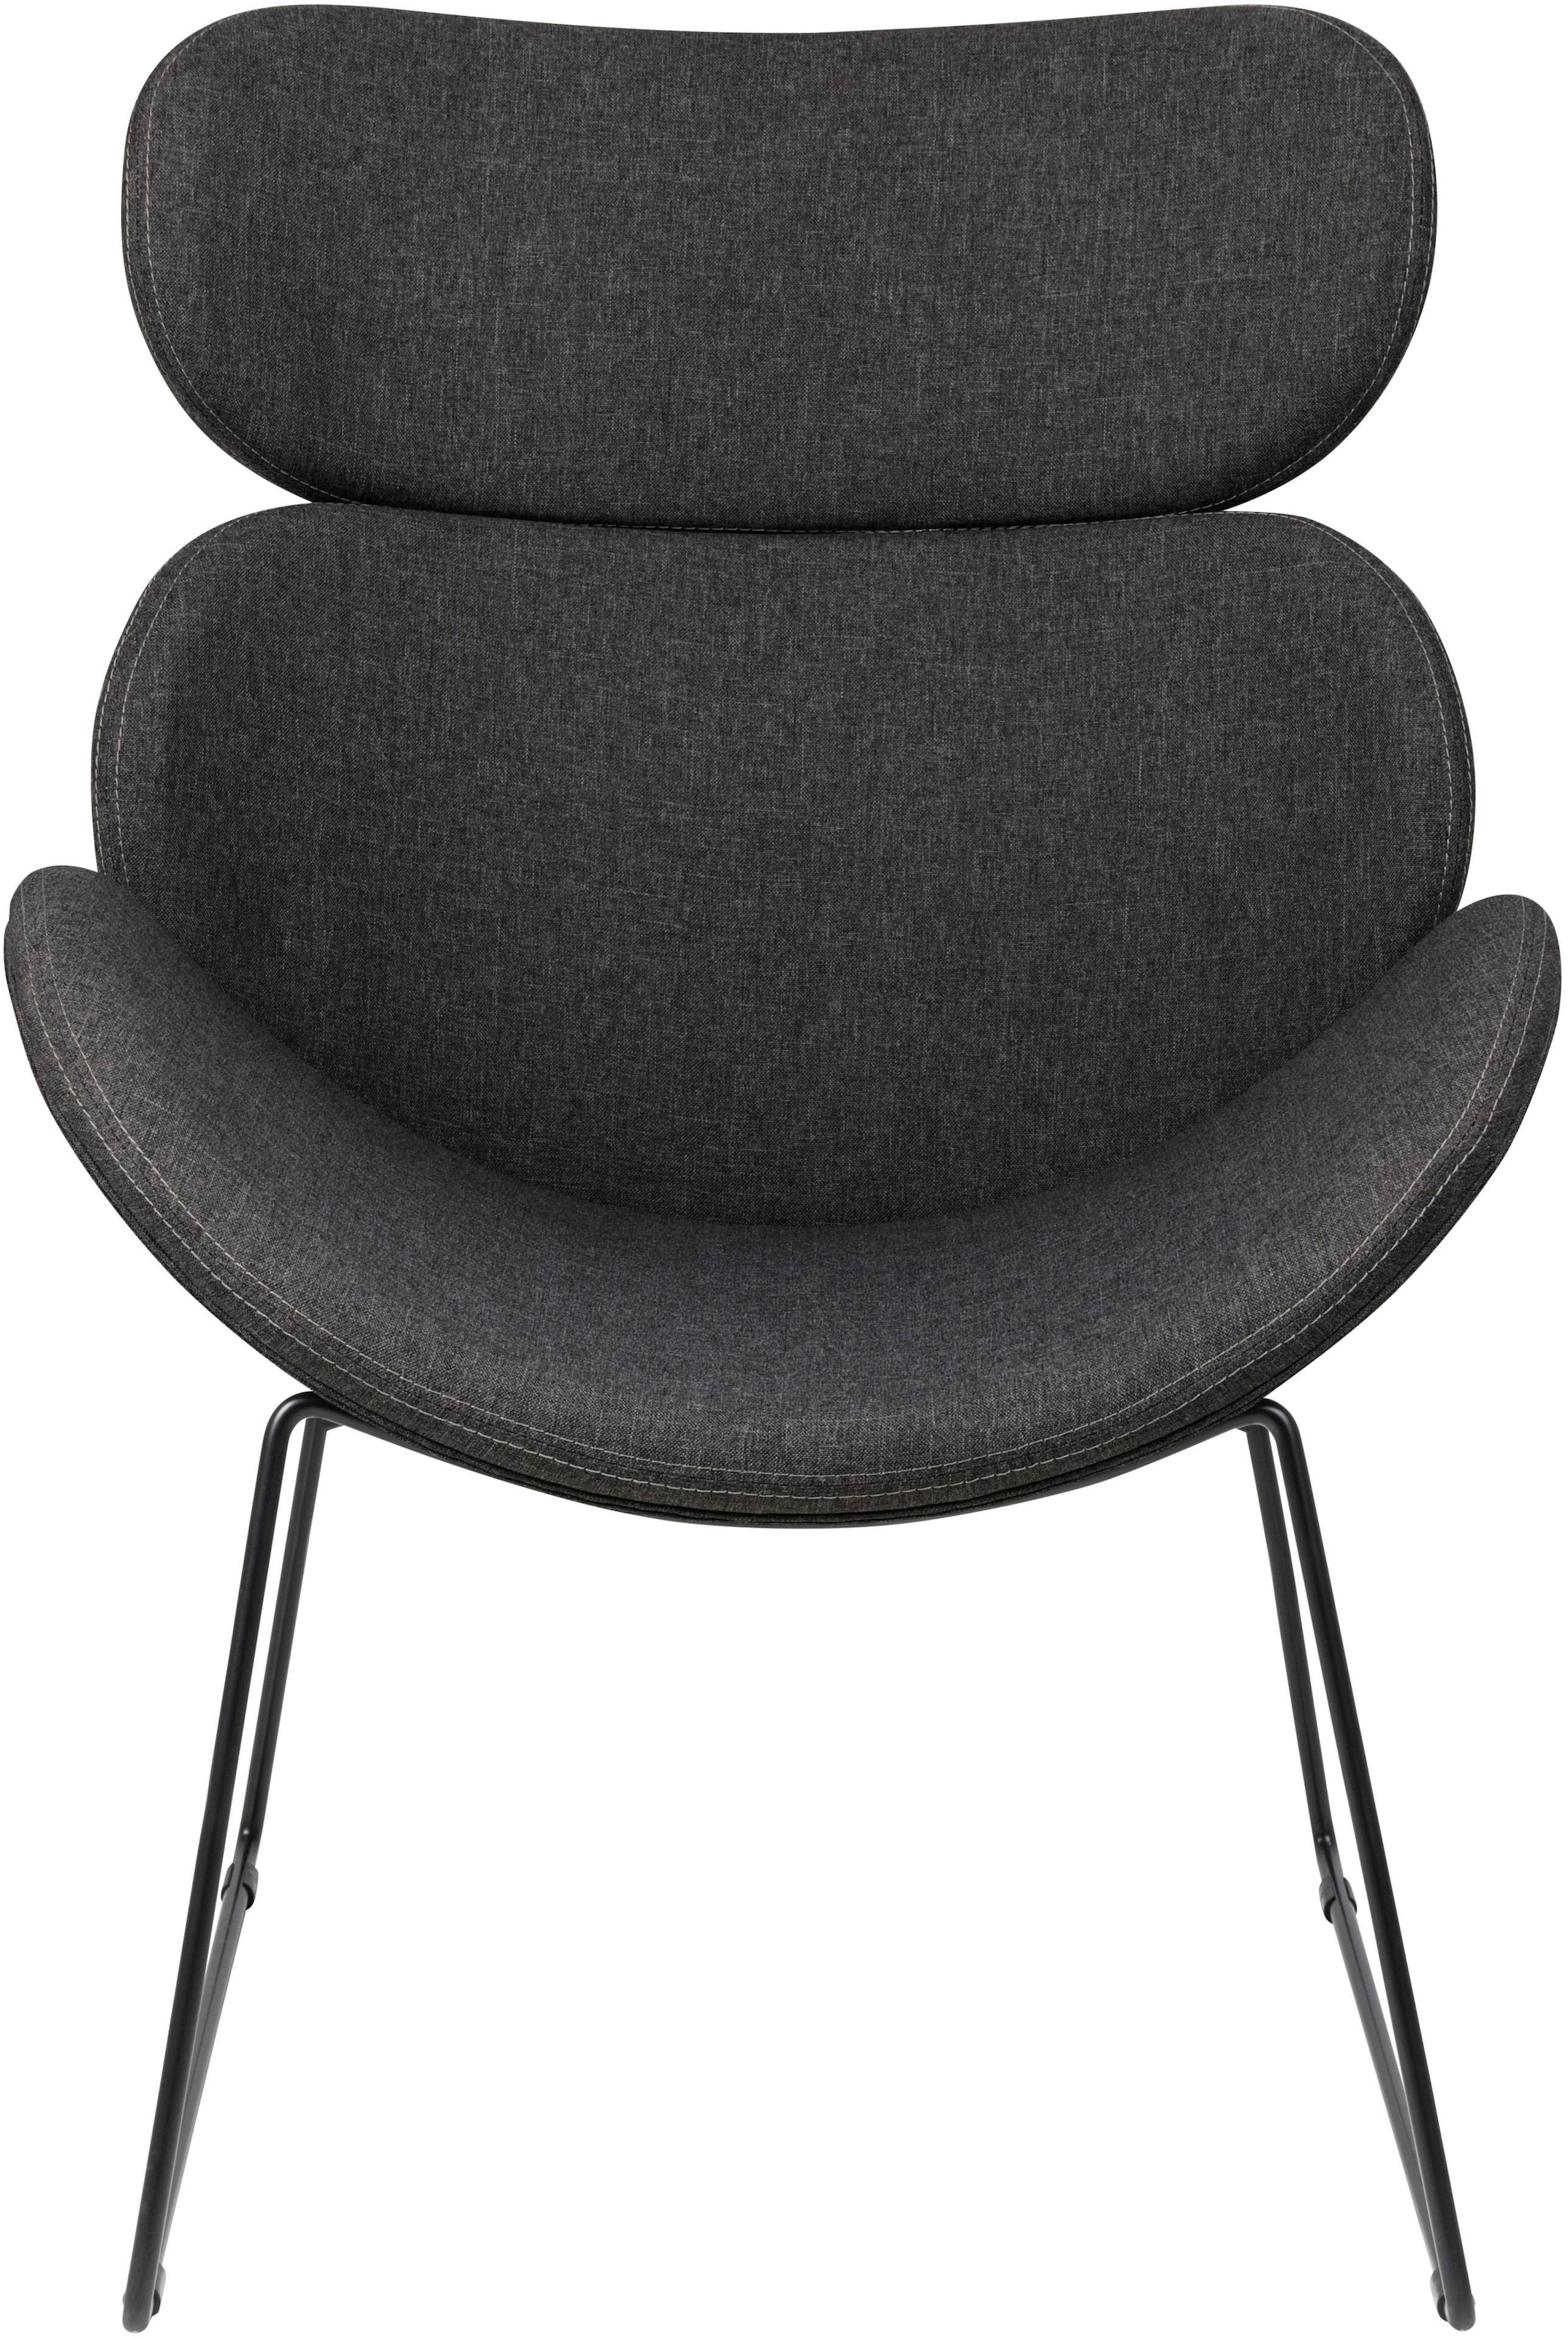 ACTONA GROUP Loungesessel »Chiara«, Sitzhöhe günstig unterschiedlichen kaufen in Bezugsqualitäten und Farbvarianten, 40cm